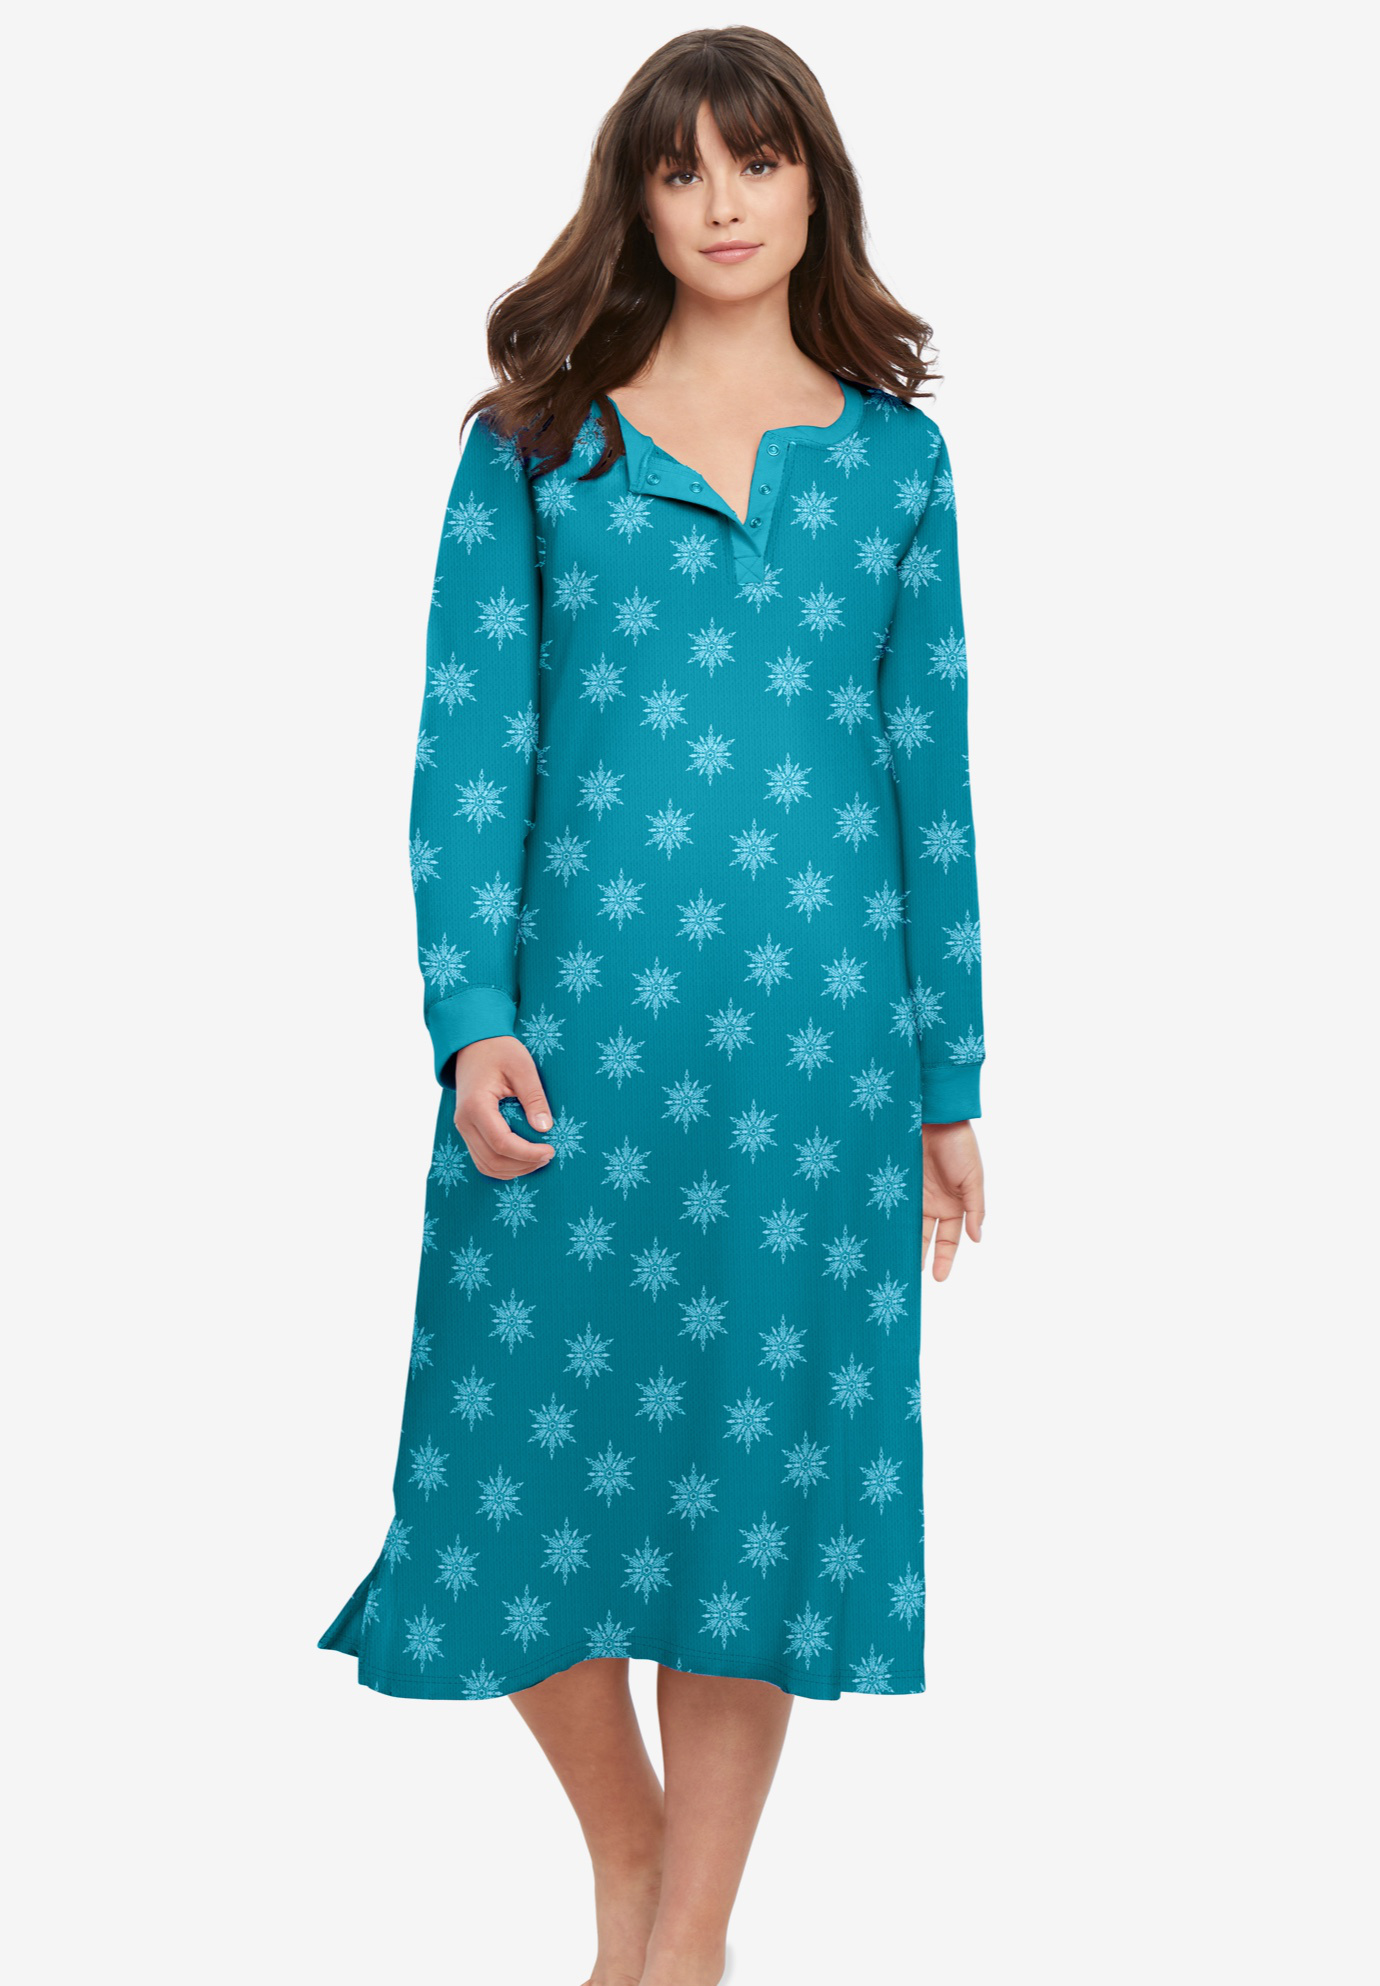 Aria Women's and Women's Plus Sleeveless Cotton Nightgown, Sizes S-4X -  Walmart.com